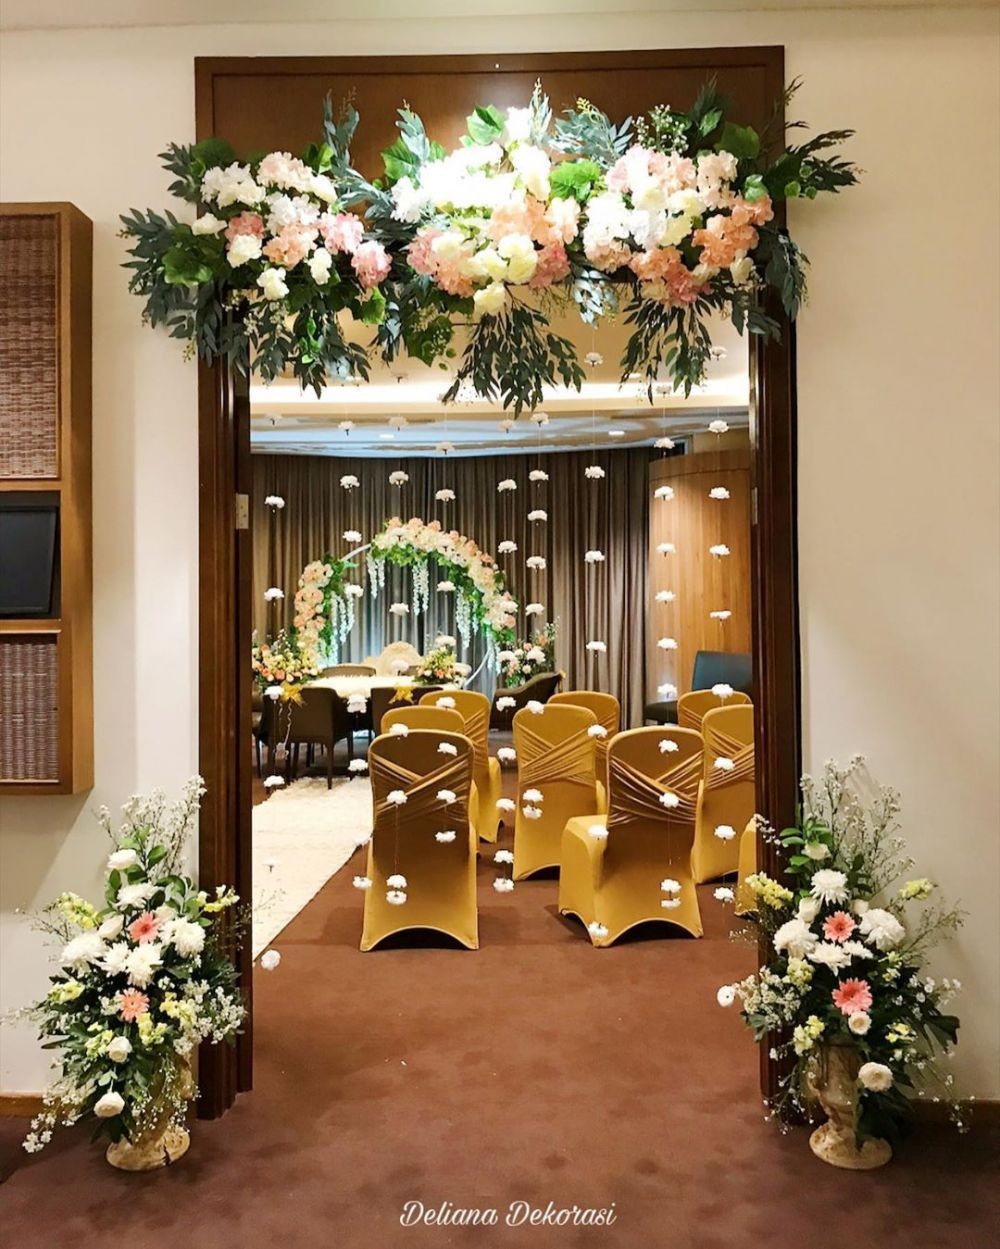 5 Tempat Yang Cocok Untuk Menaruh Dekorasi Bunga Di Acara Pernikahan